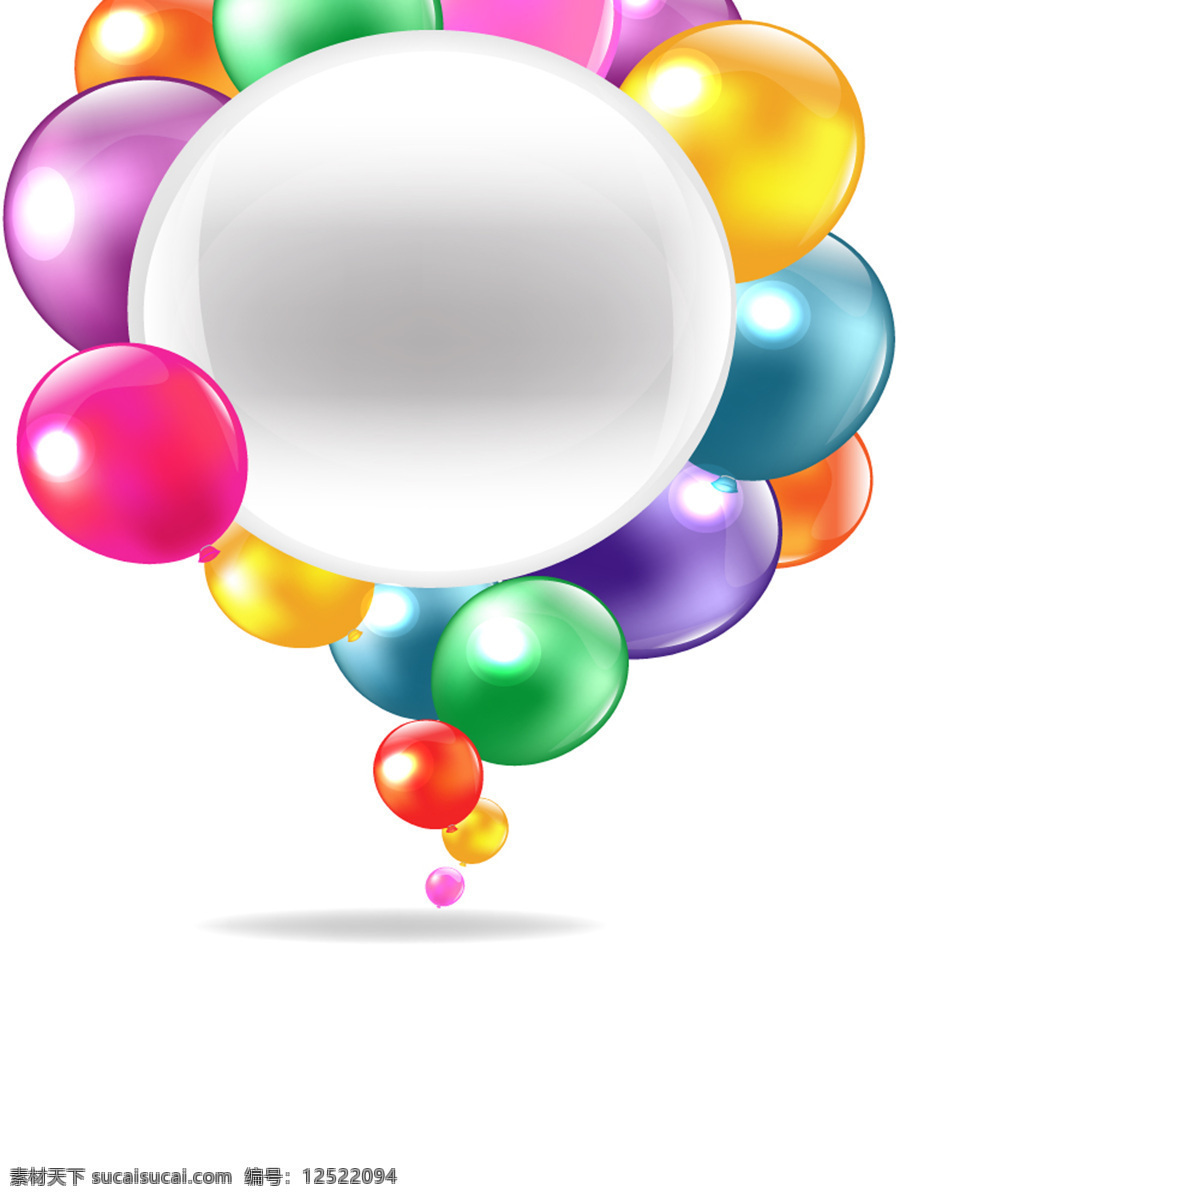 气球 边框 矢量图 彩色 矢量素材 矢量图库 矢量图下载 节日素材 其他节日